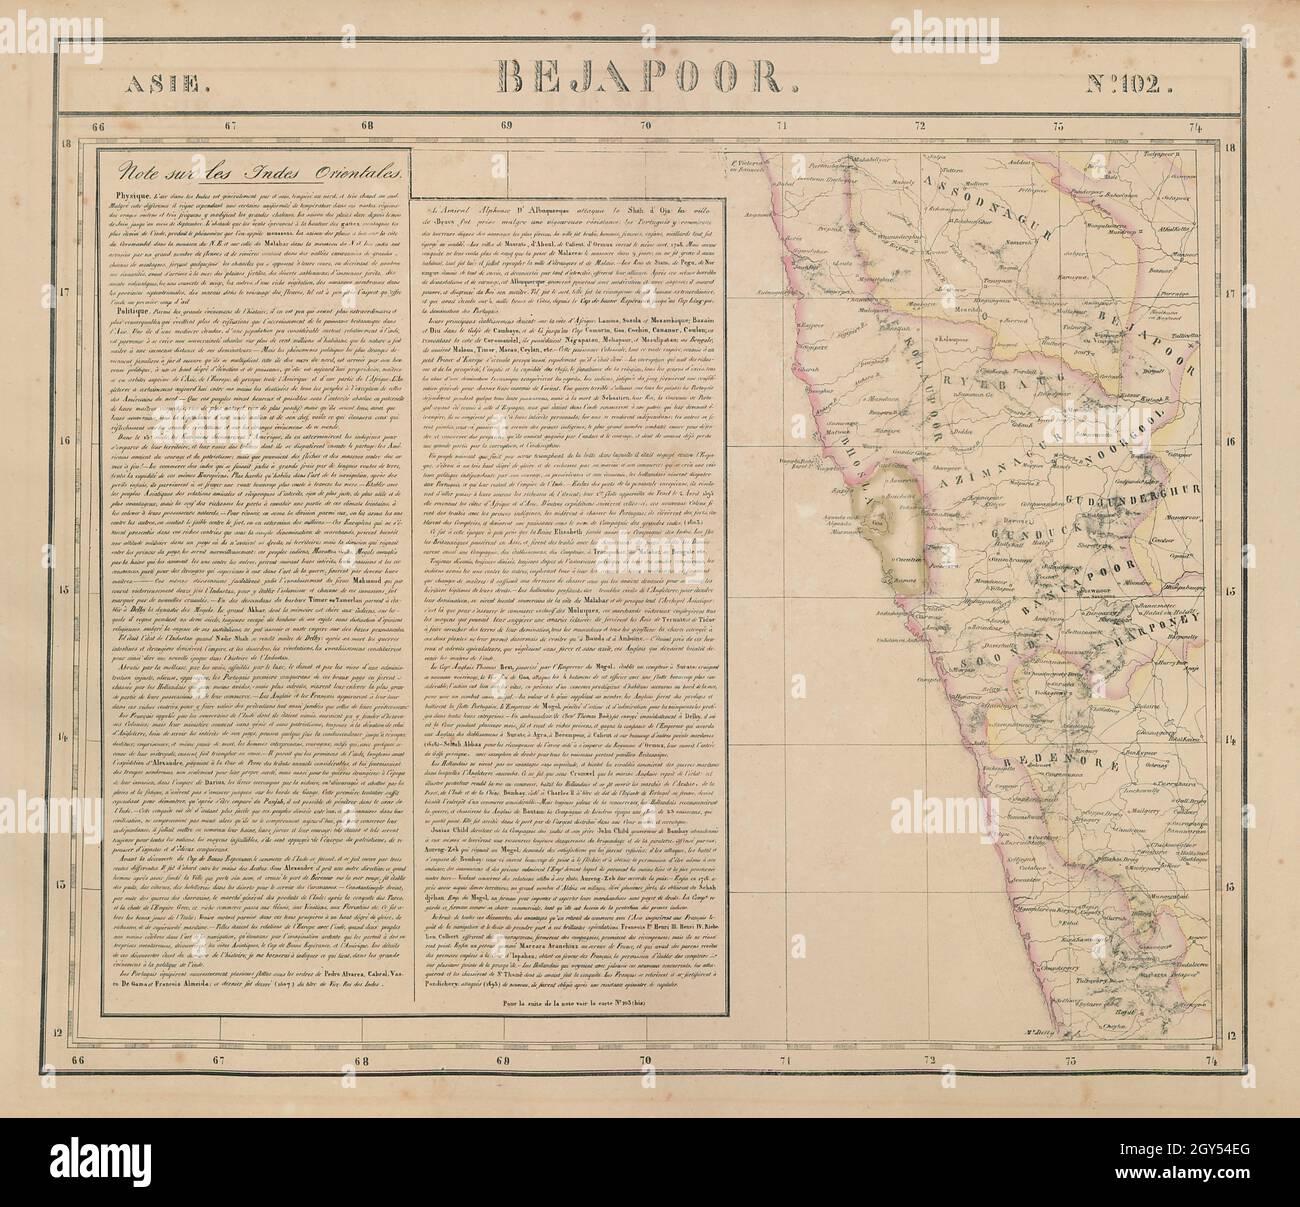 Asie.Bejapoor #102 SW Inde Maharashtra Goa Karnataka.Carte VANDERMAELEN 1827 Banque D'Images